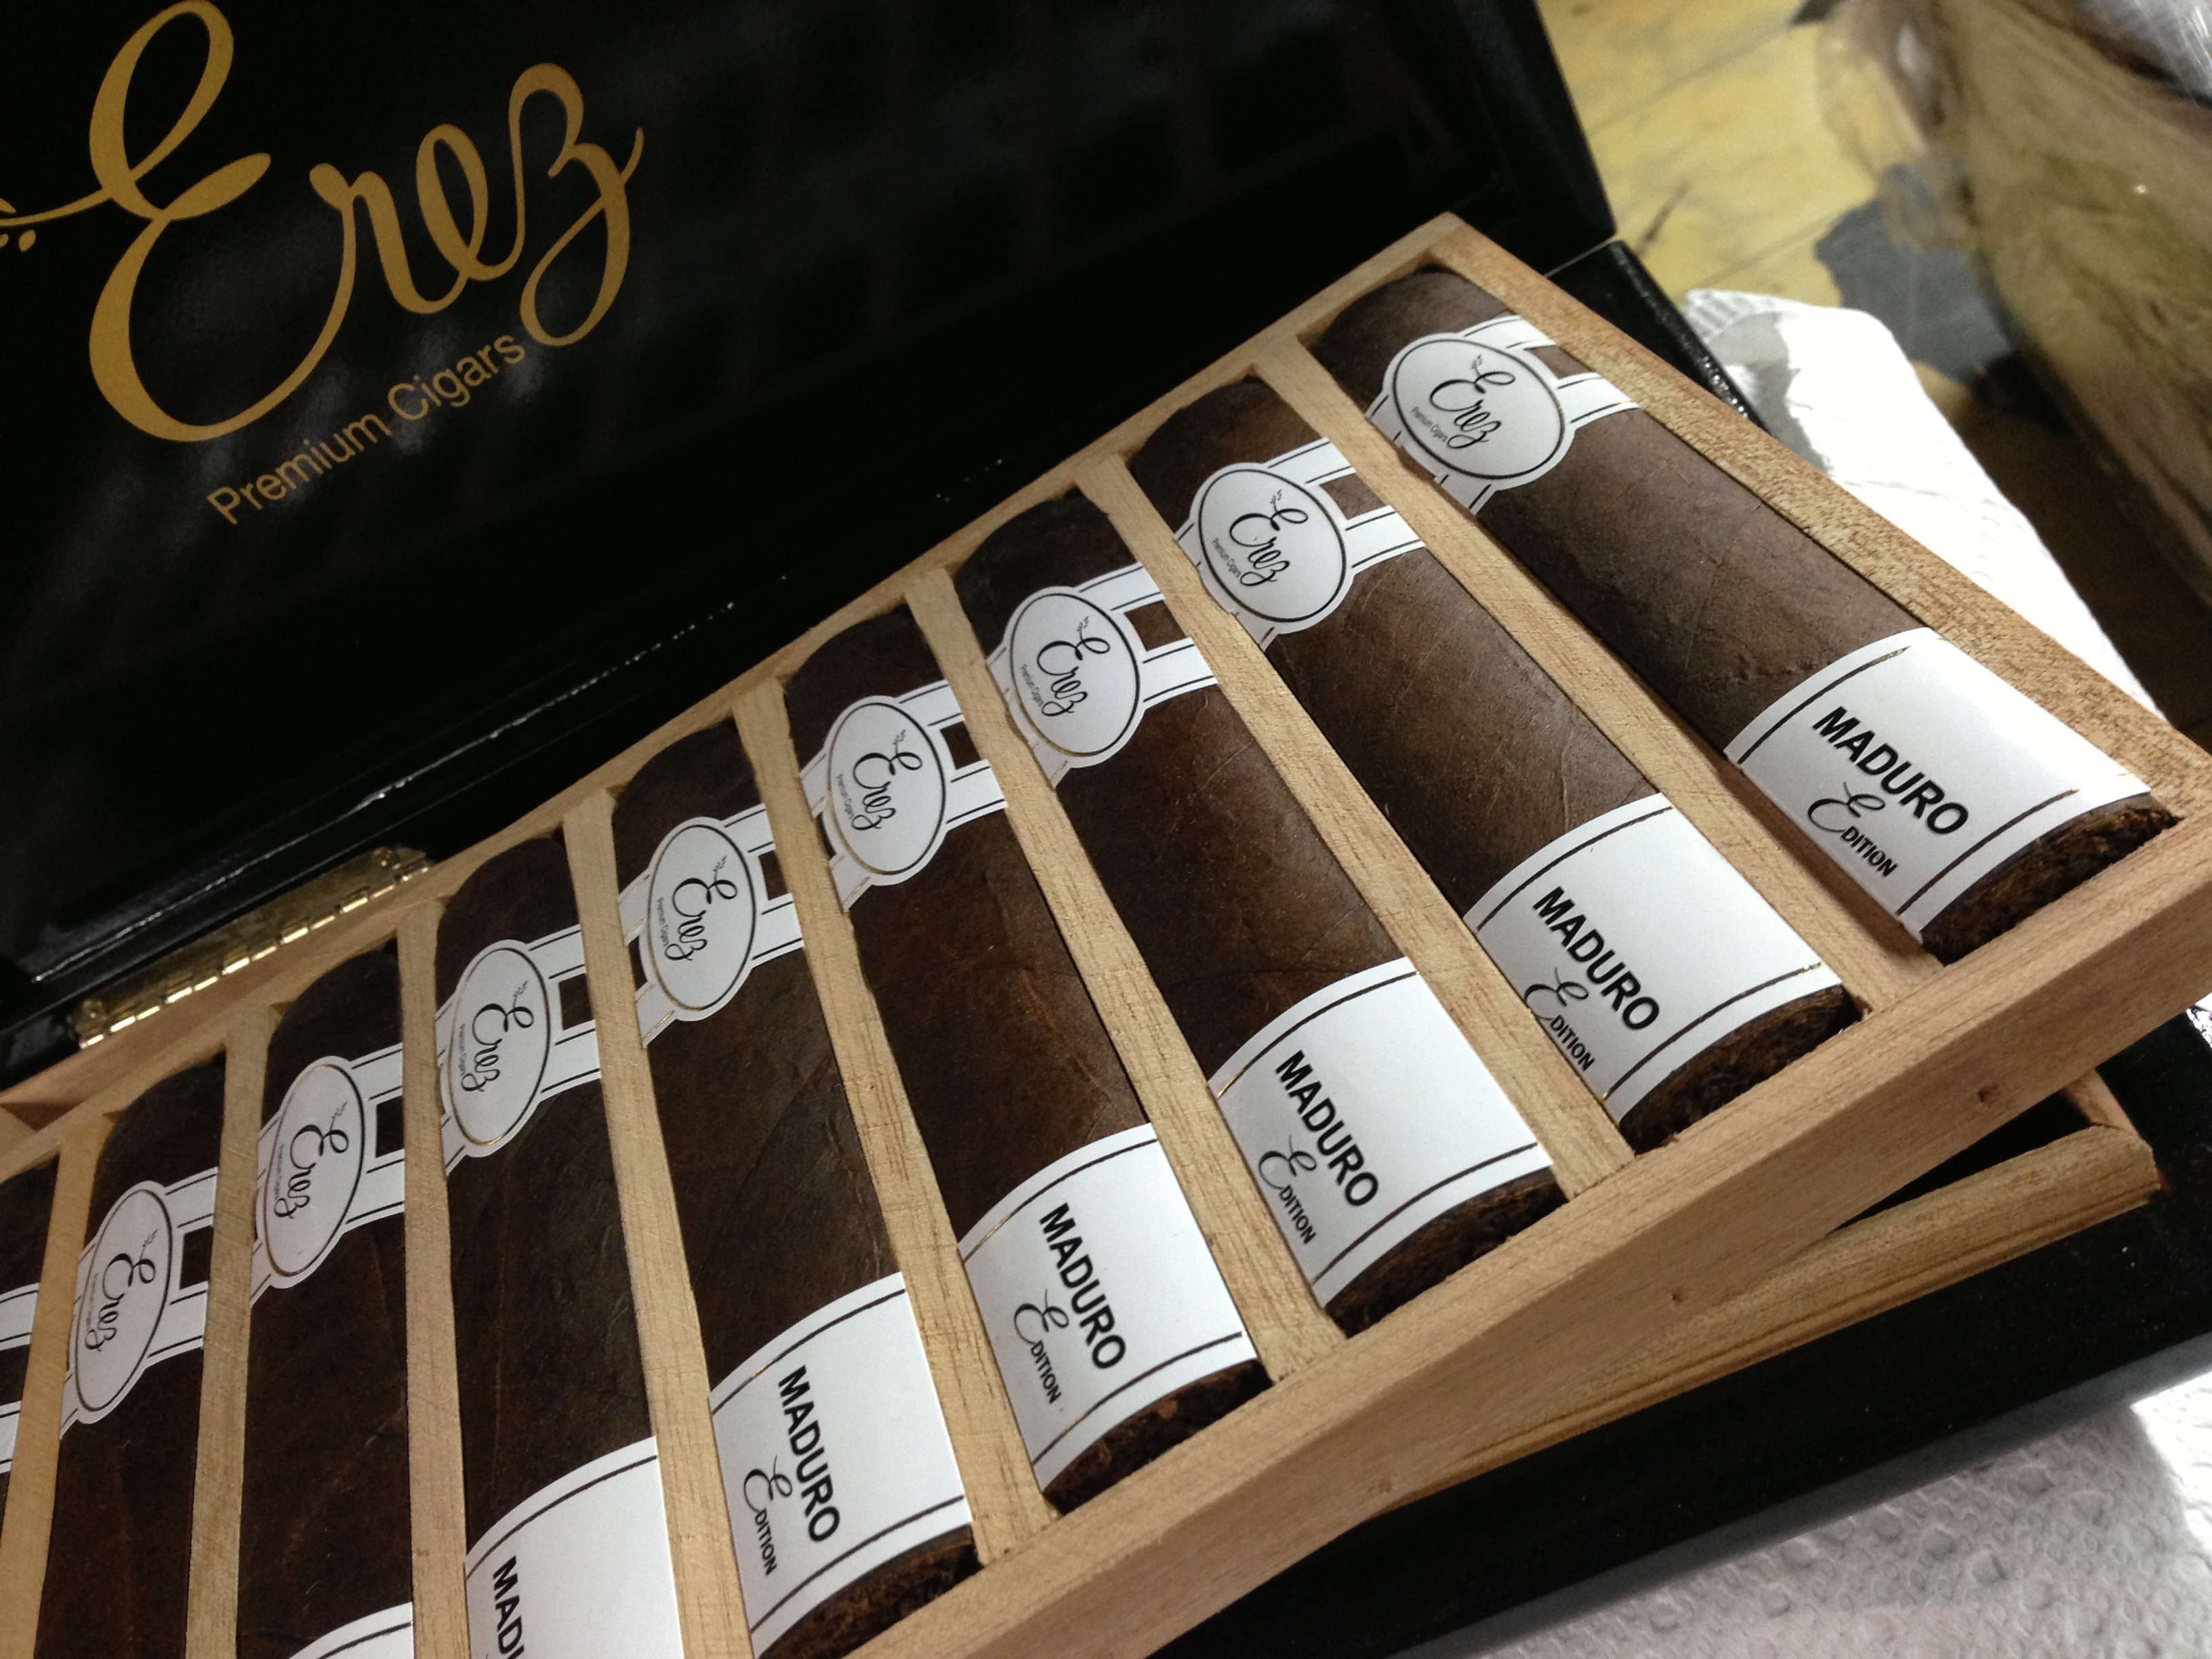 Erez Cigars Boxes Press (2)